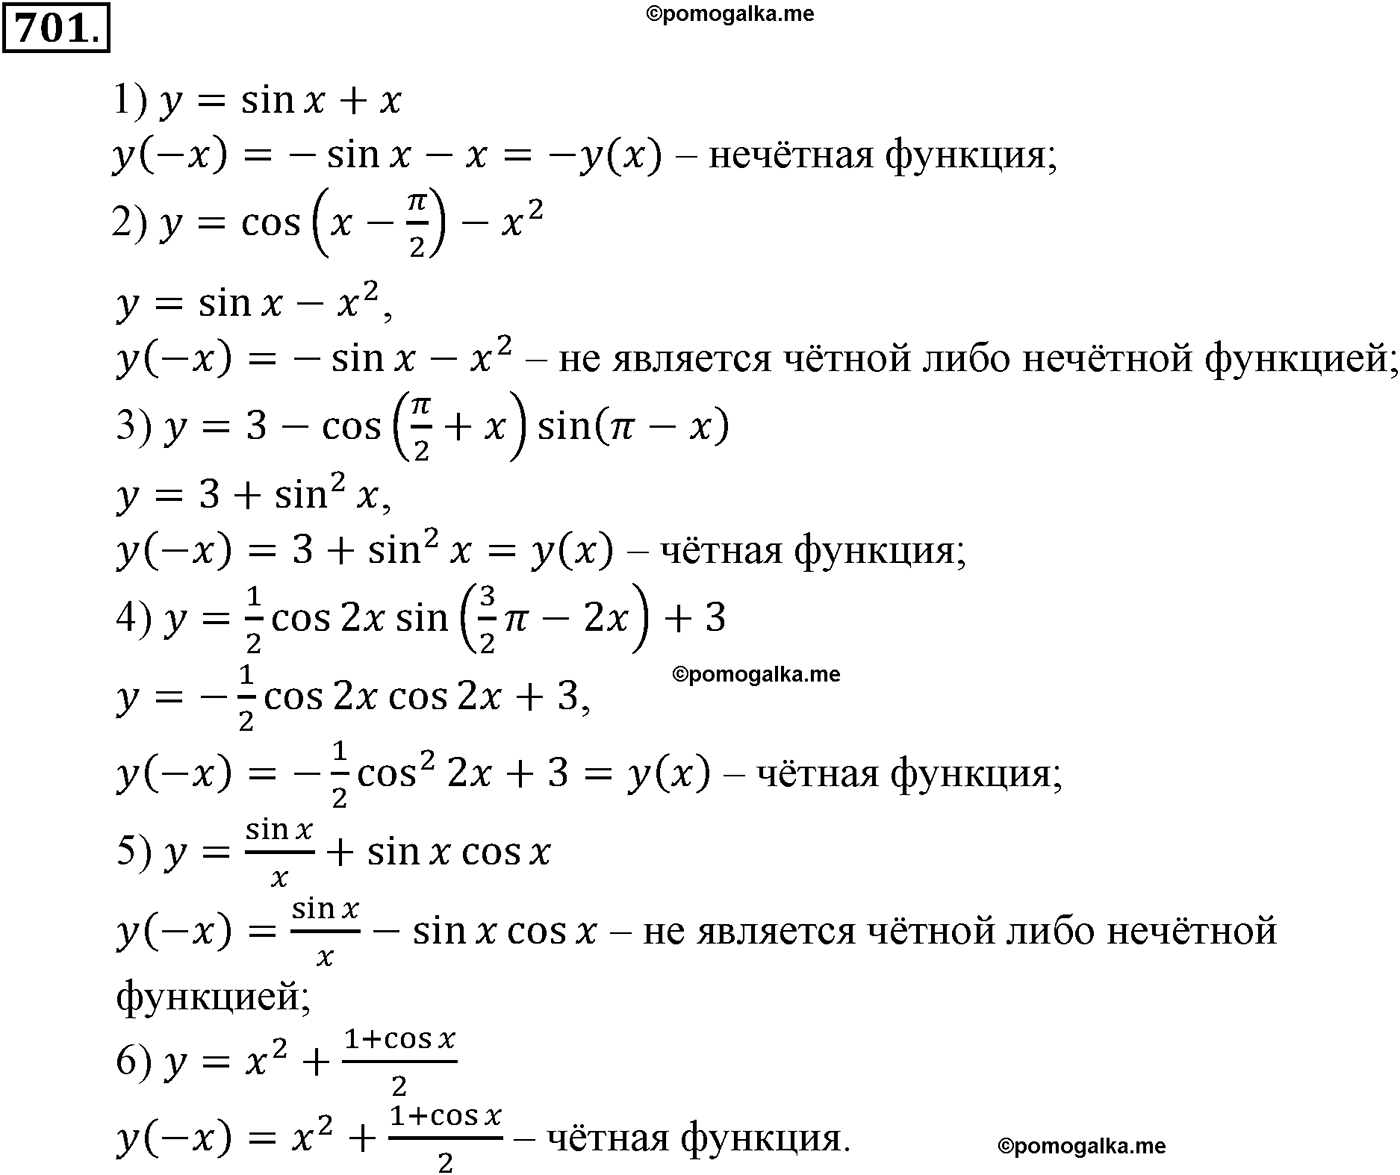 разбор задачи №701 по алгебре за 10-11 класс из учебника Алимова, Колягина